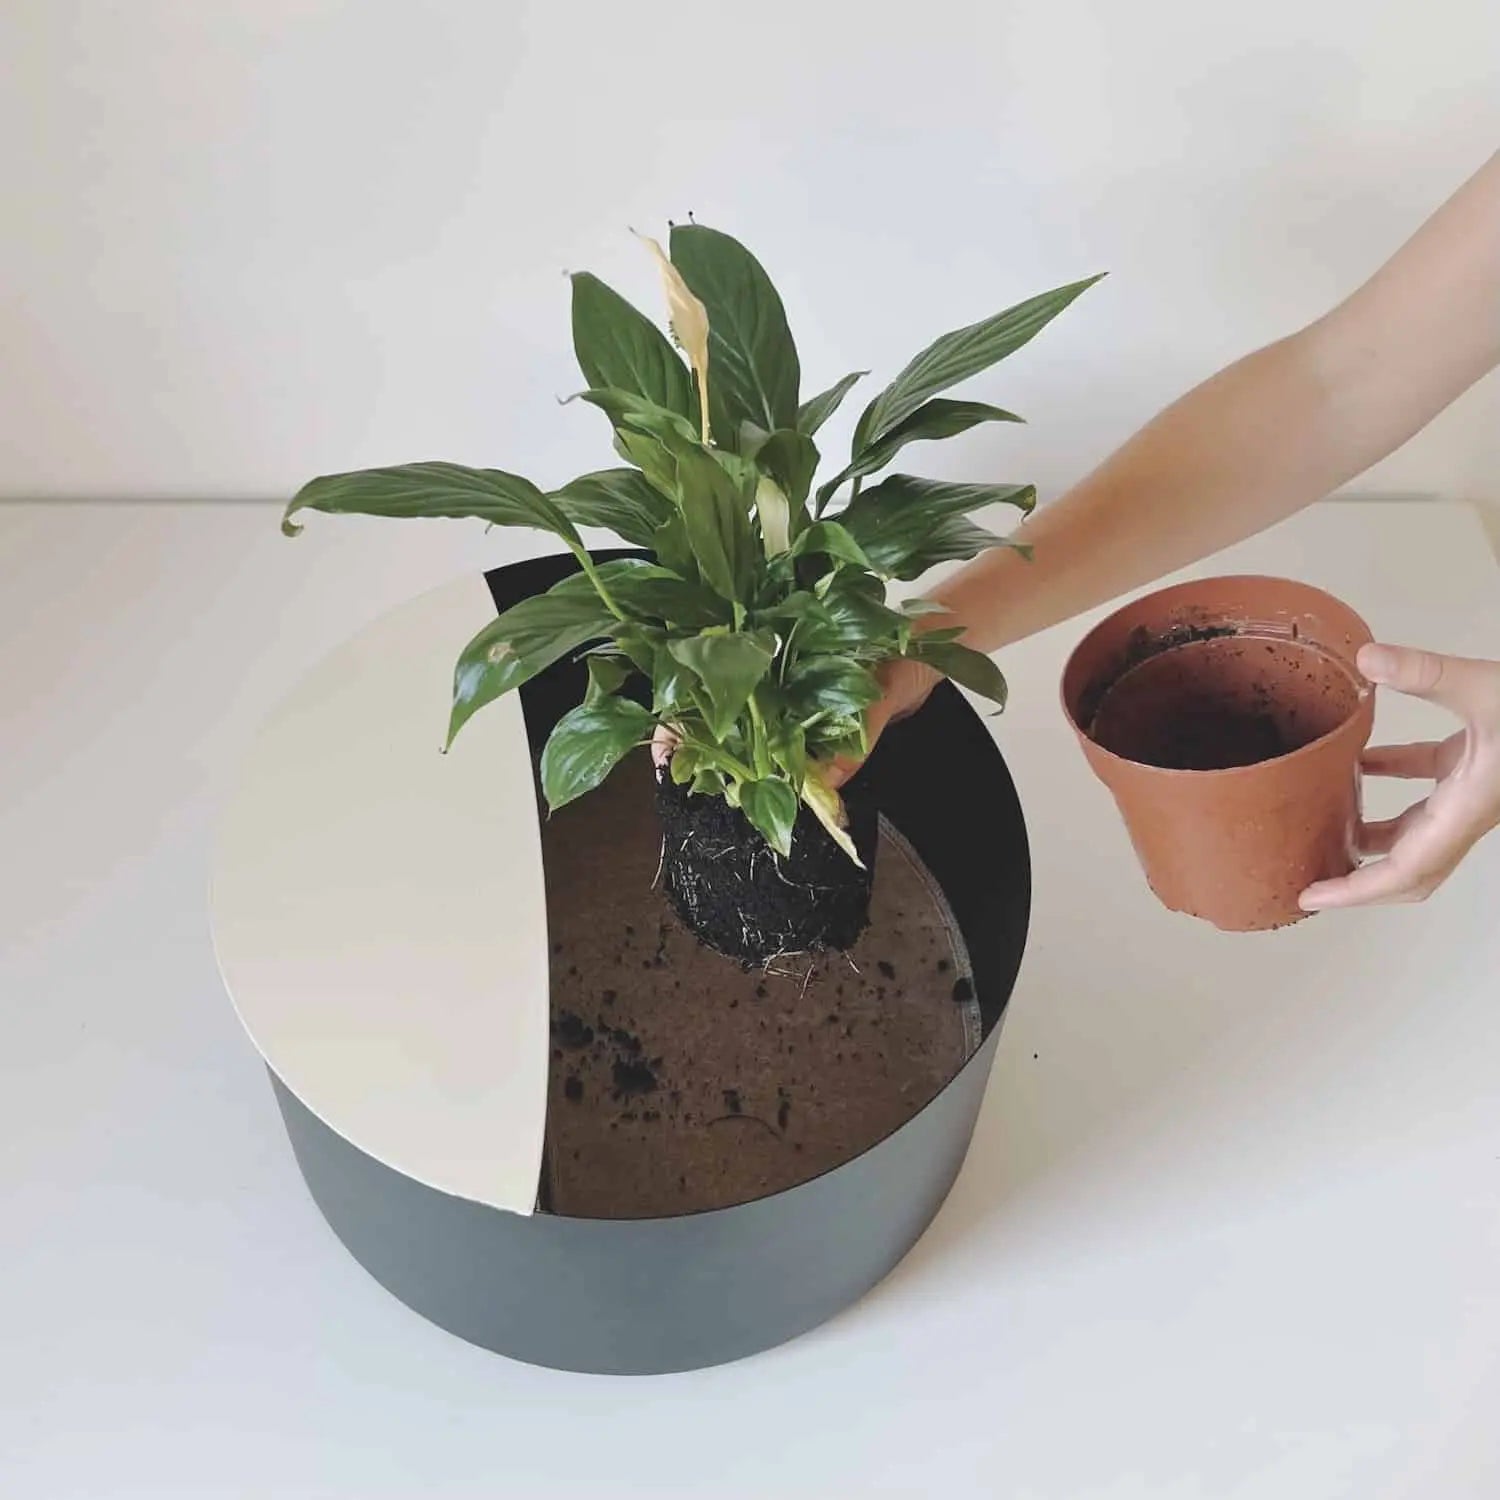 Comment rempoter ma plante dans le pot de fleur ?